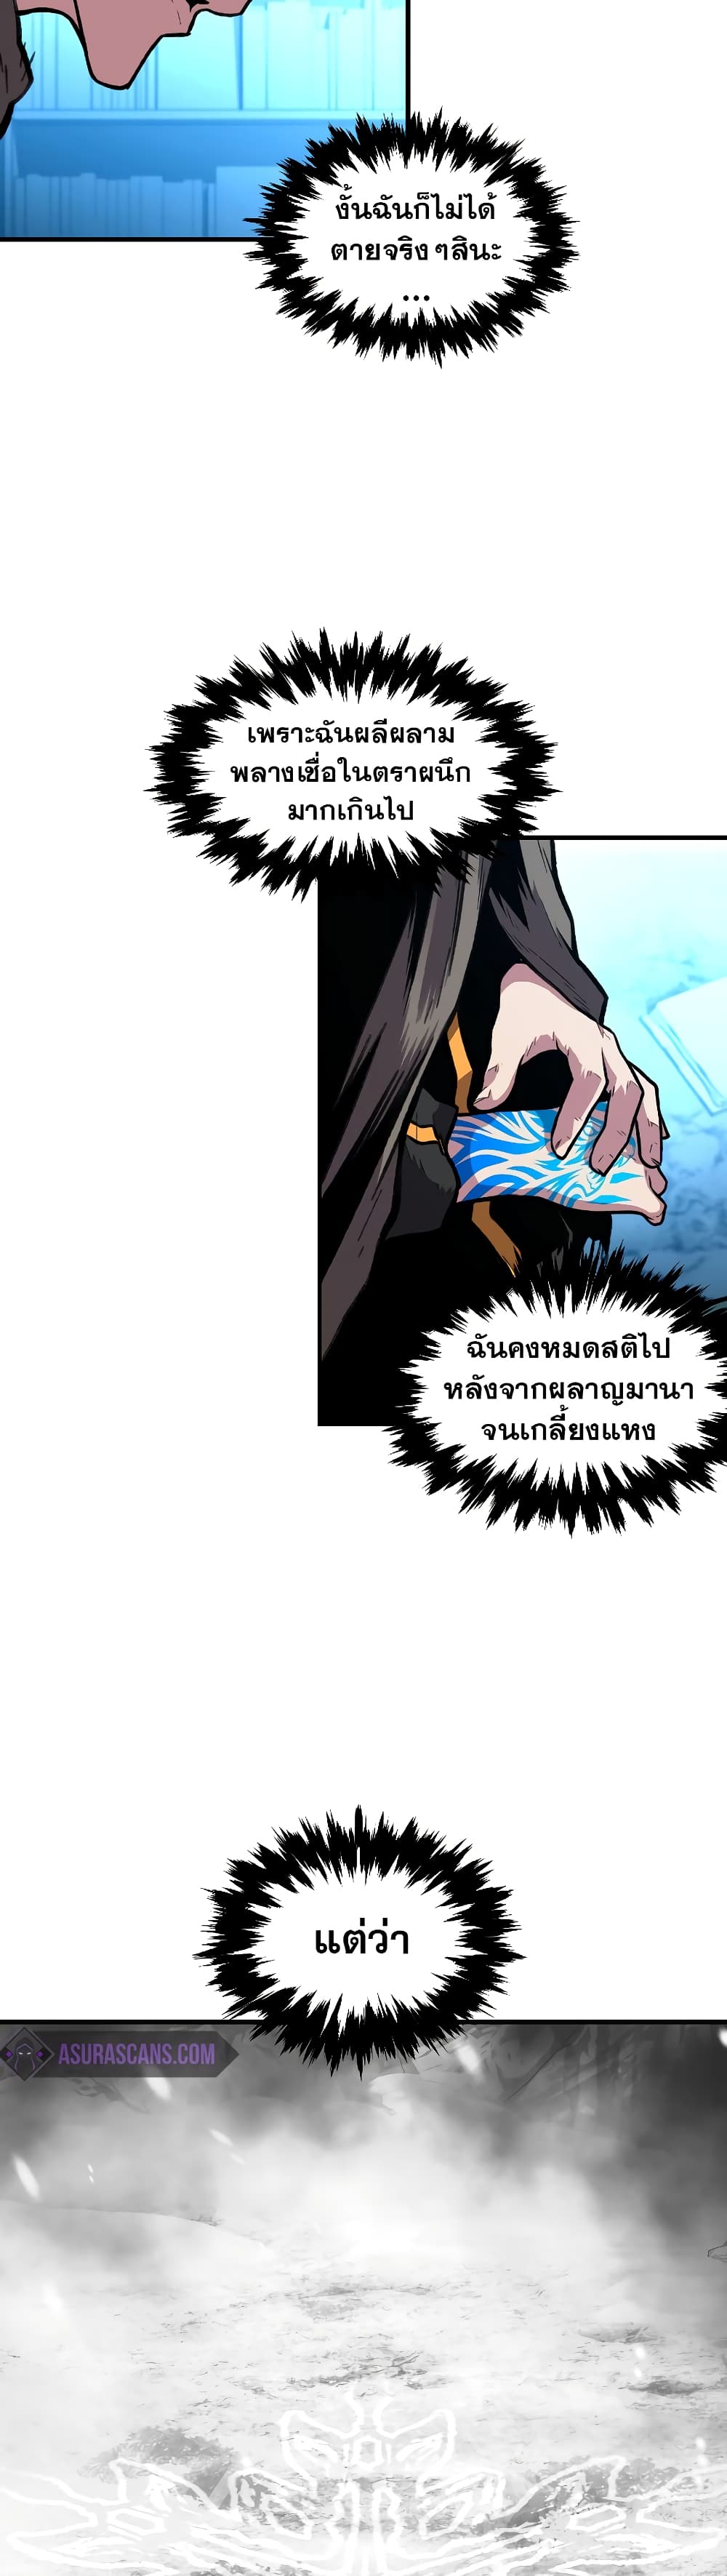 Talent-Swallowing Magician 20 แปลไทย